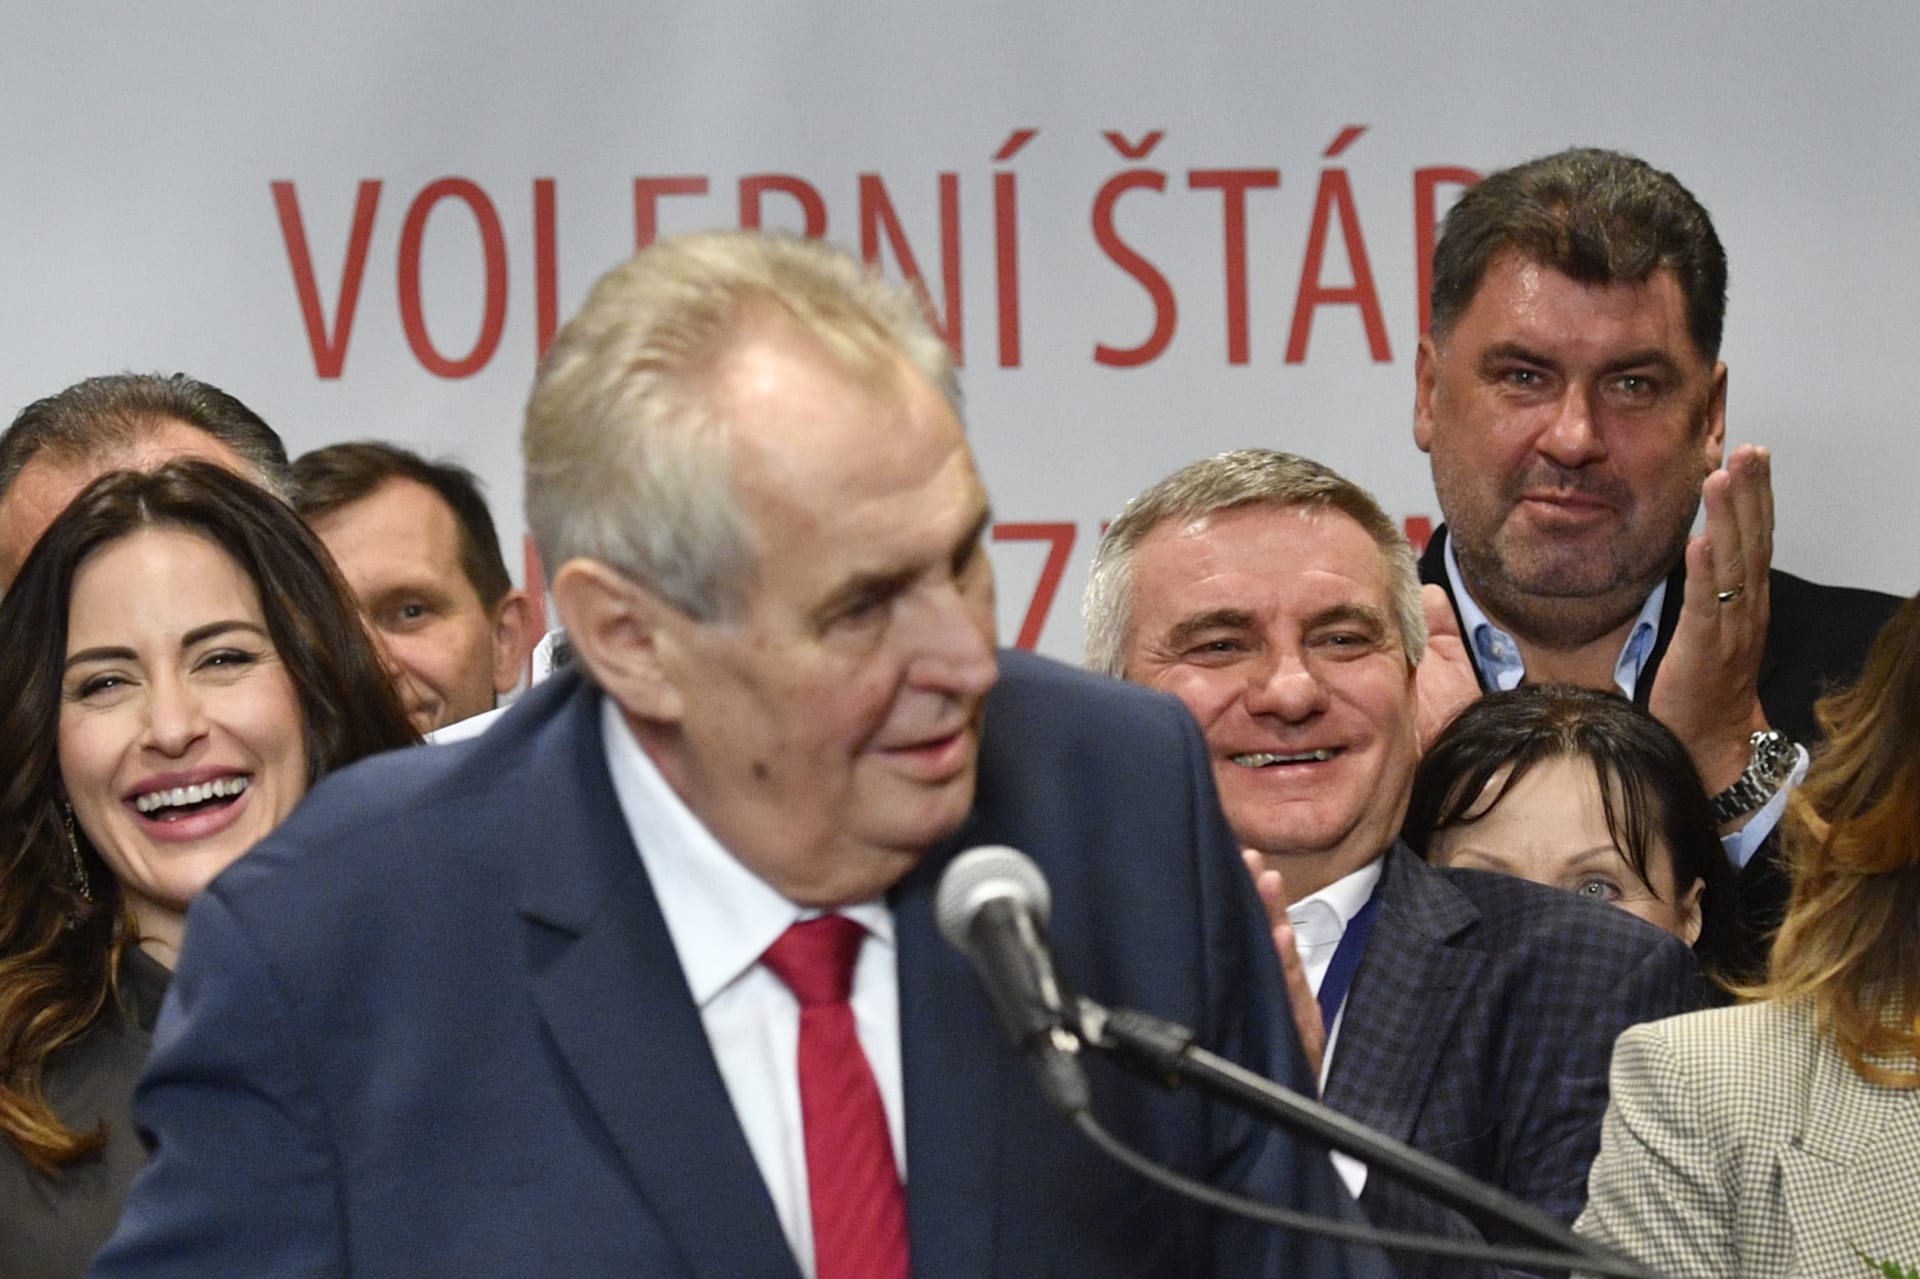 2018: Volební štáb Miloše Zemana, v pozadí Martin Nejedlý (vpravo) a Vratislav Mynář (uprostřed). Právě ty měla BIS podle Zemana odposlouchávat.